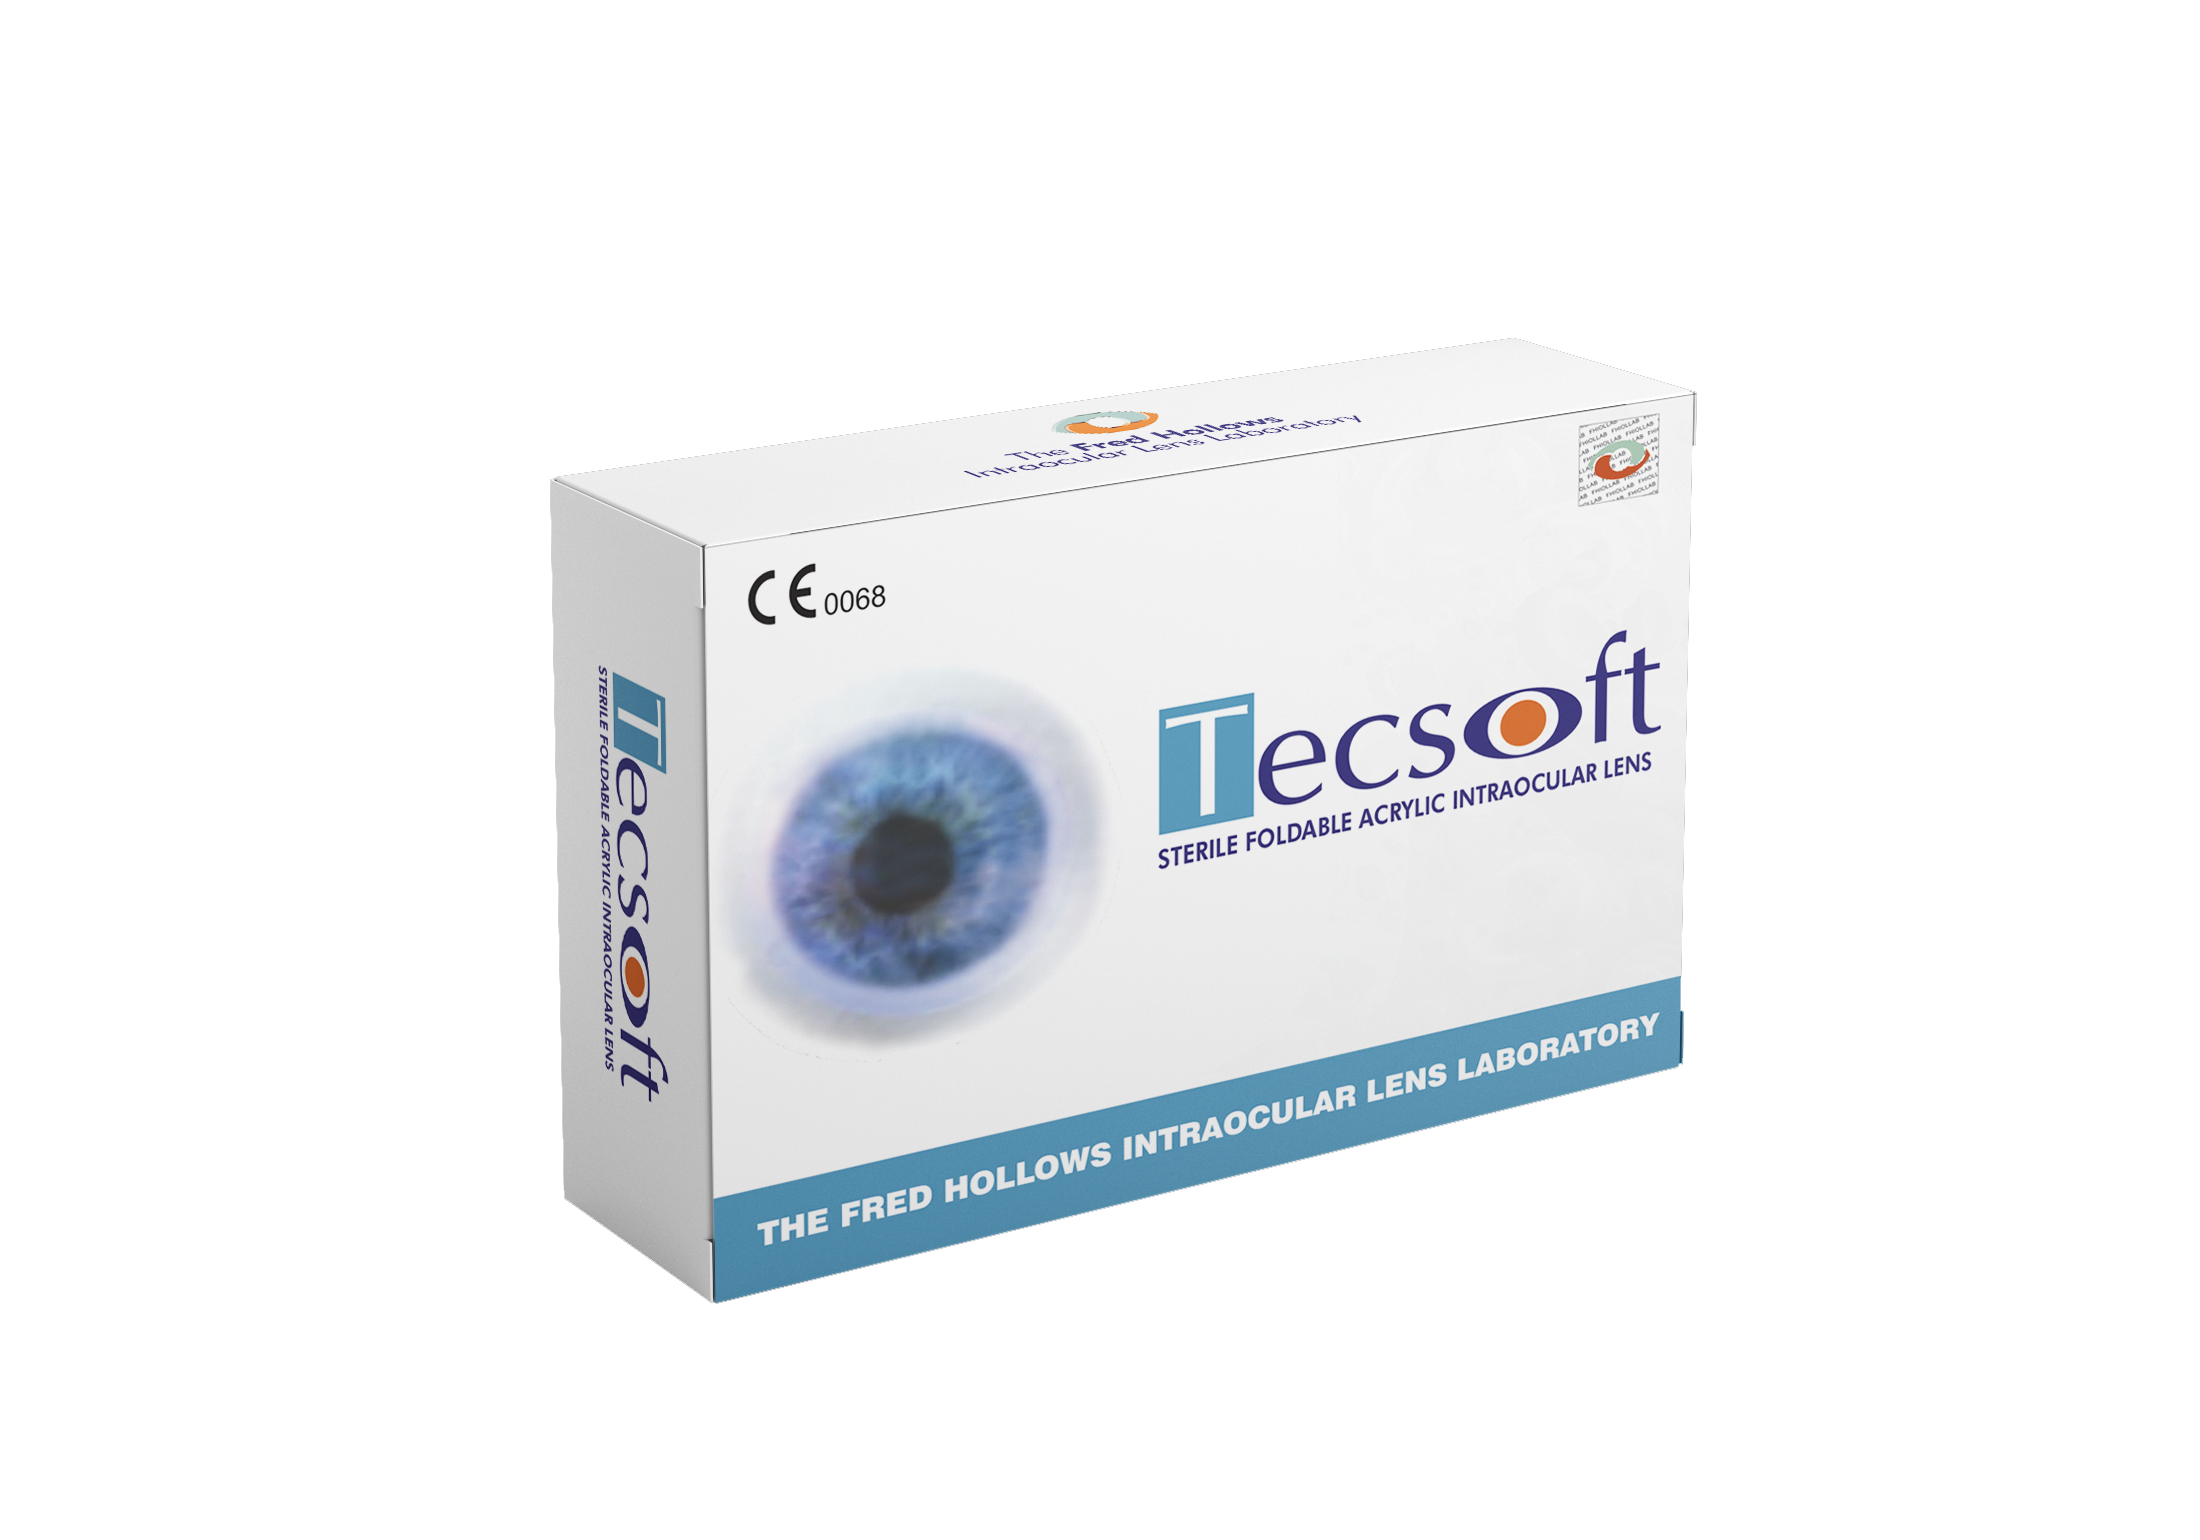 "Flex" Sterile Foldable Acrylic Intraocular Lens